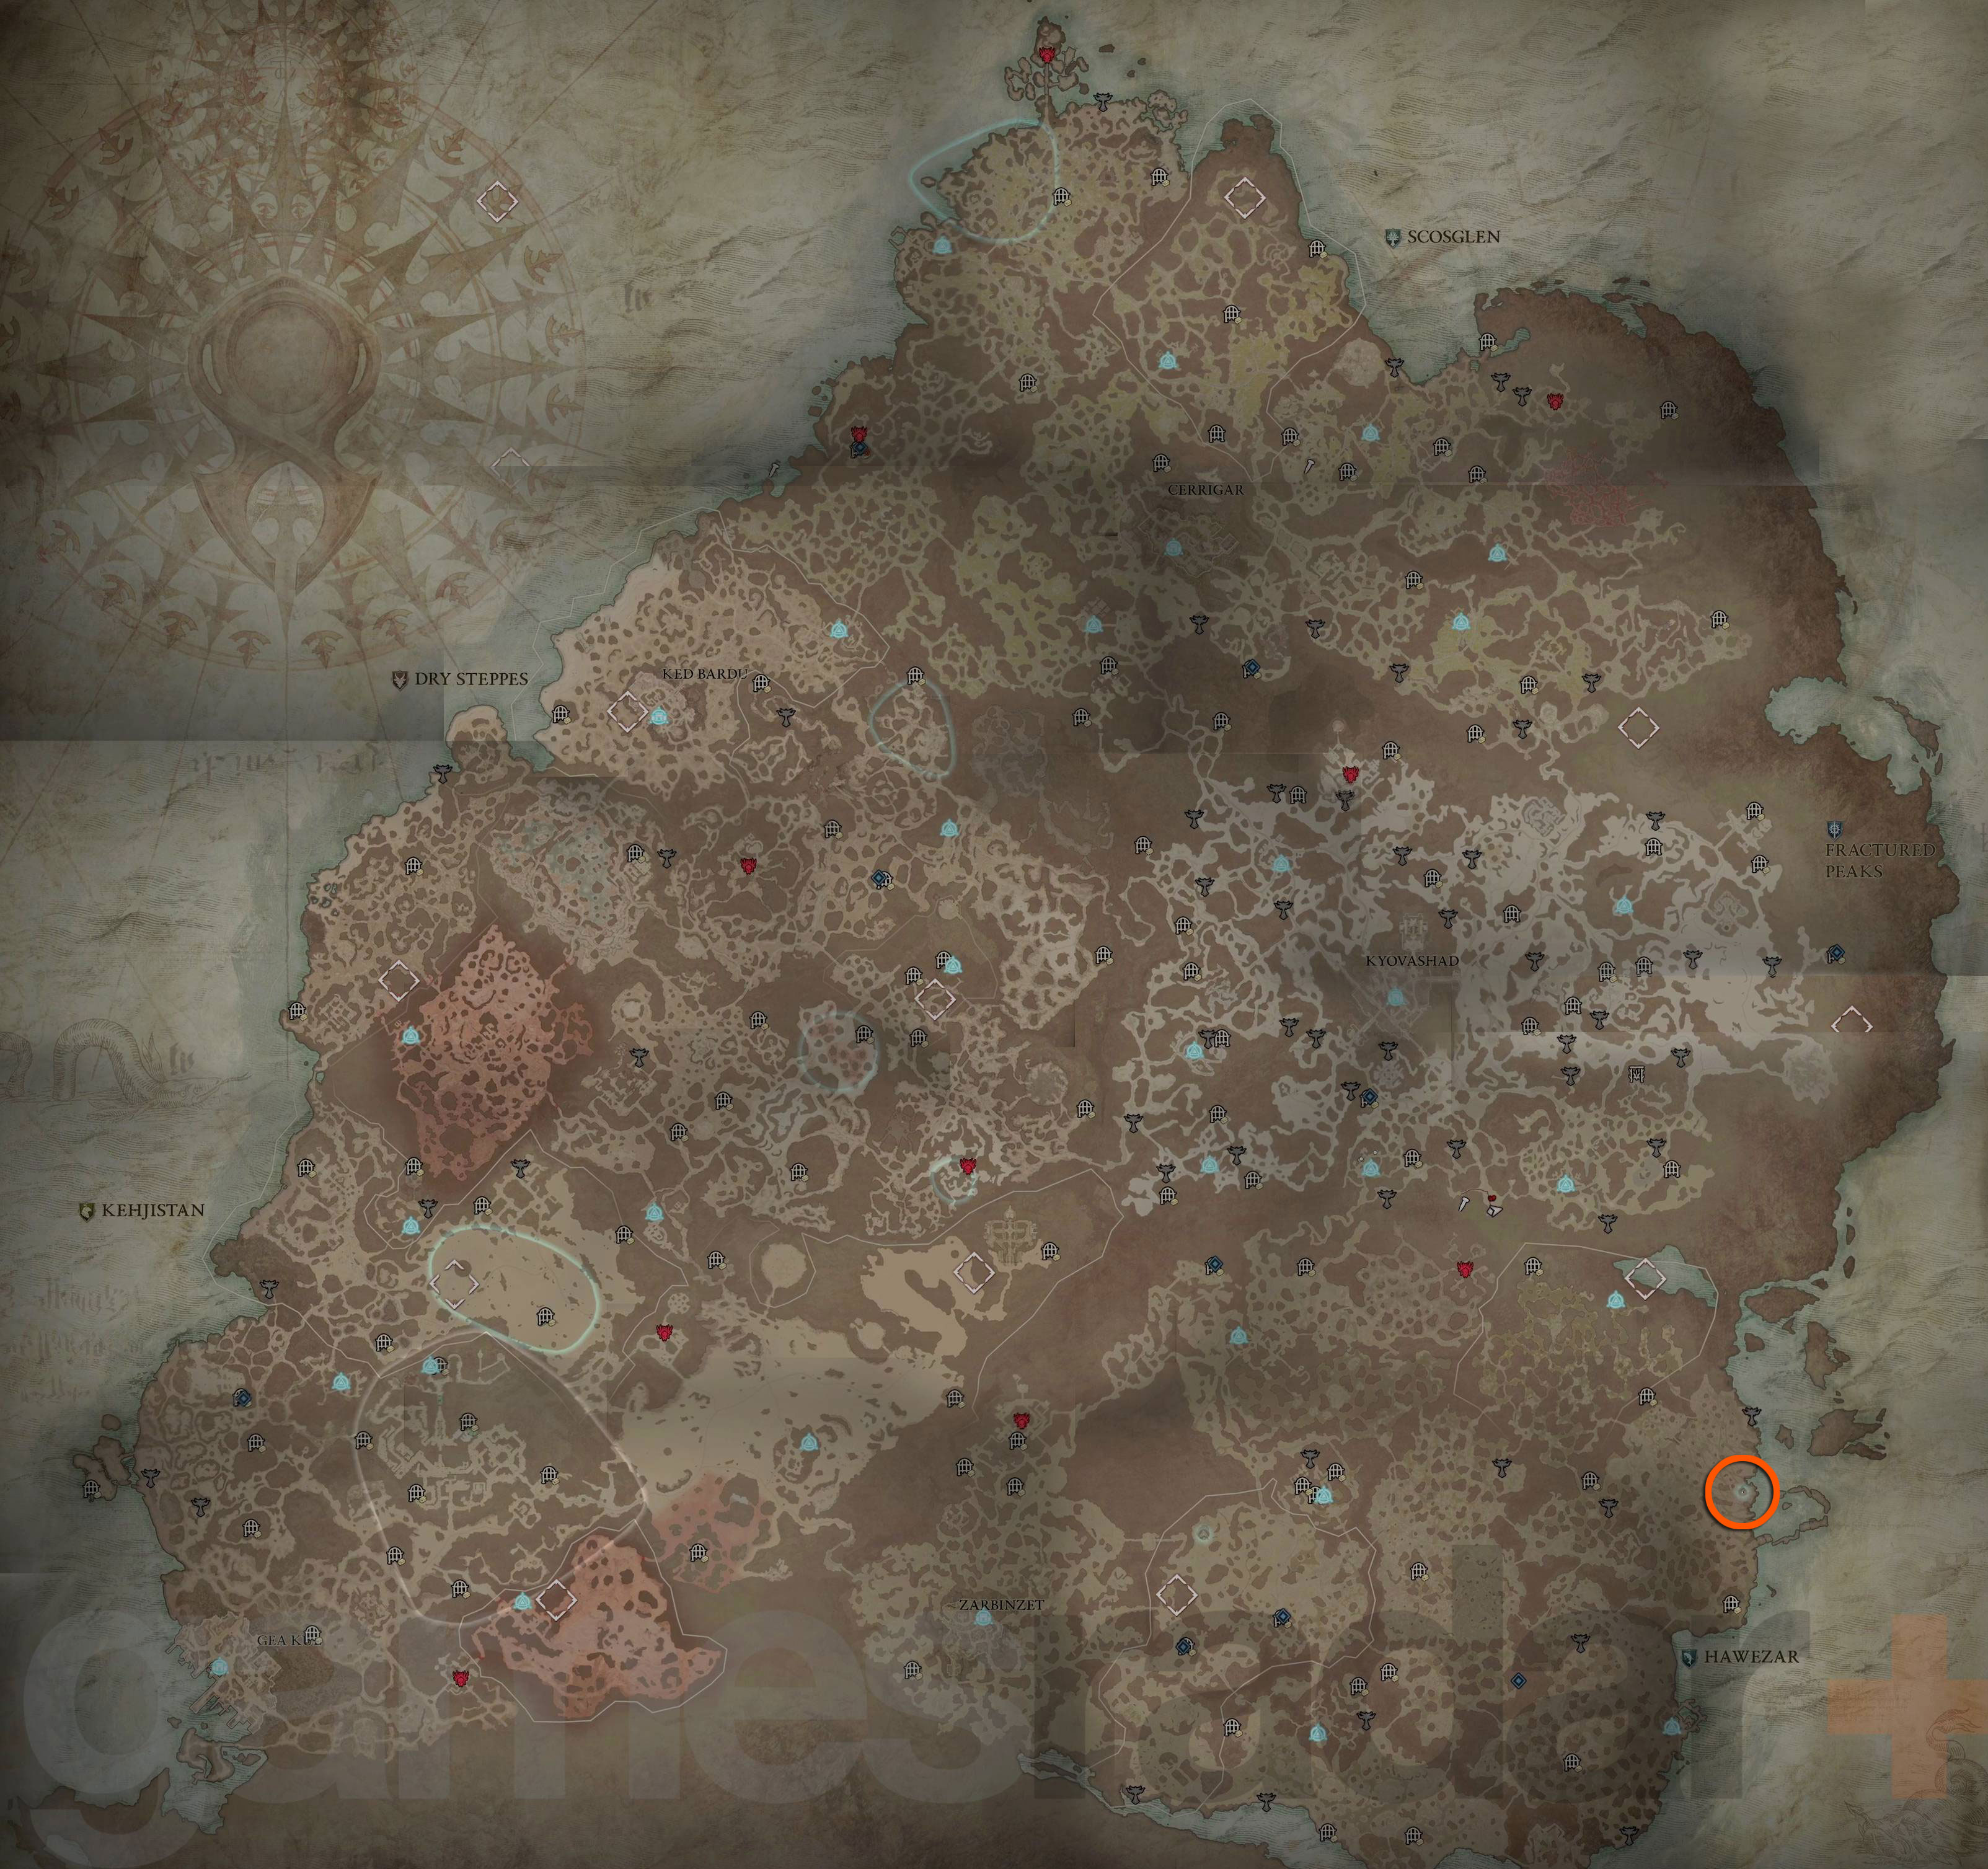 Localização da Superstição do Viajante de Diablo 4 mostrada no mapa